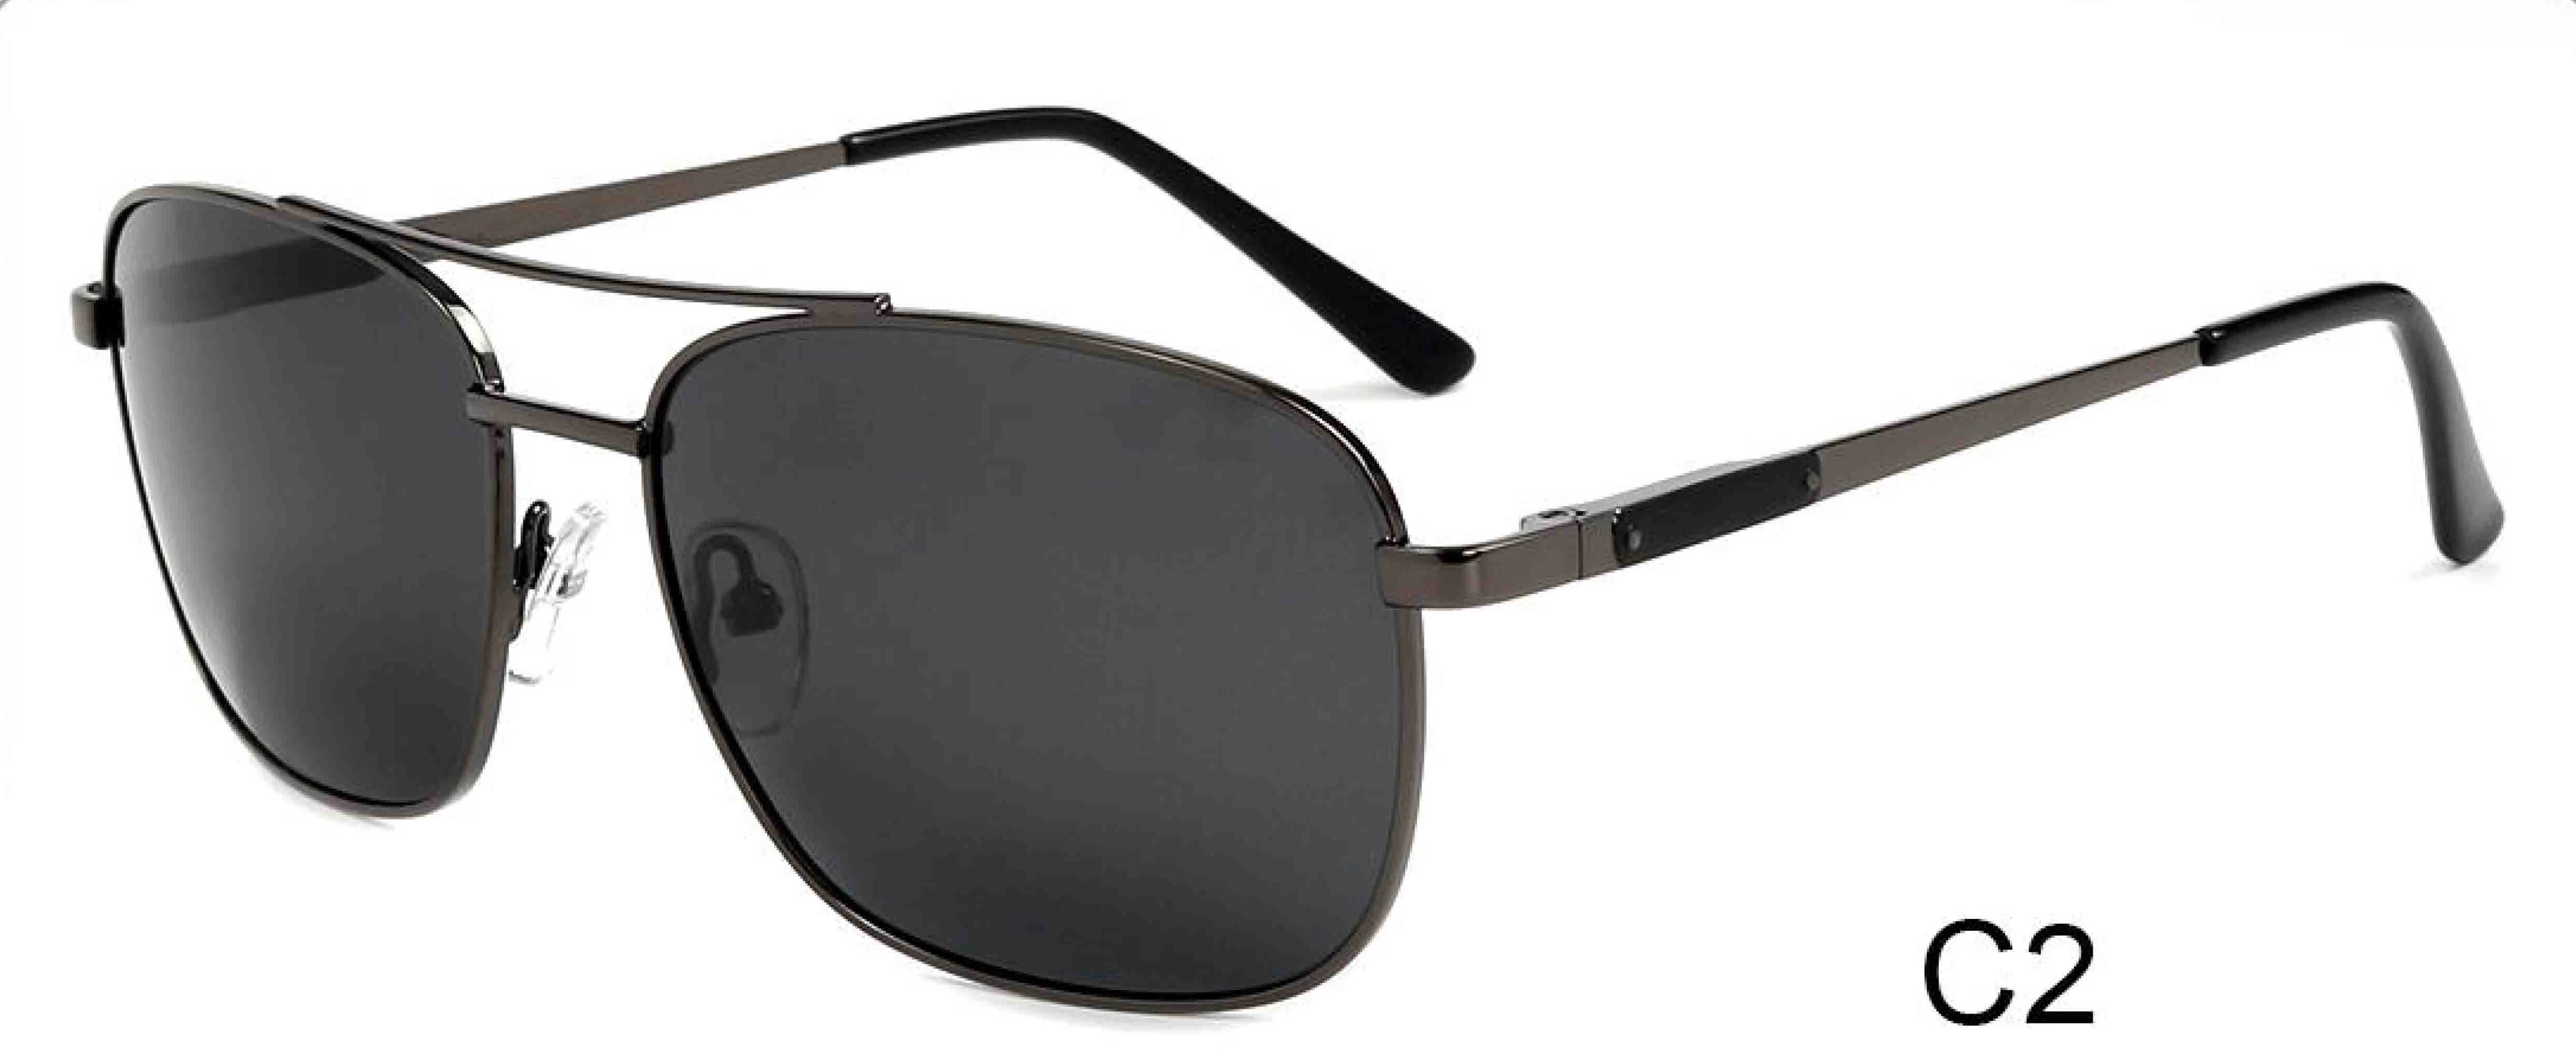 sun glasses UV 400 mens retro metal vintage driving finishing polarized sunglasses